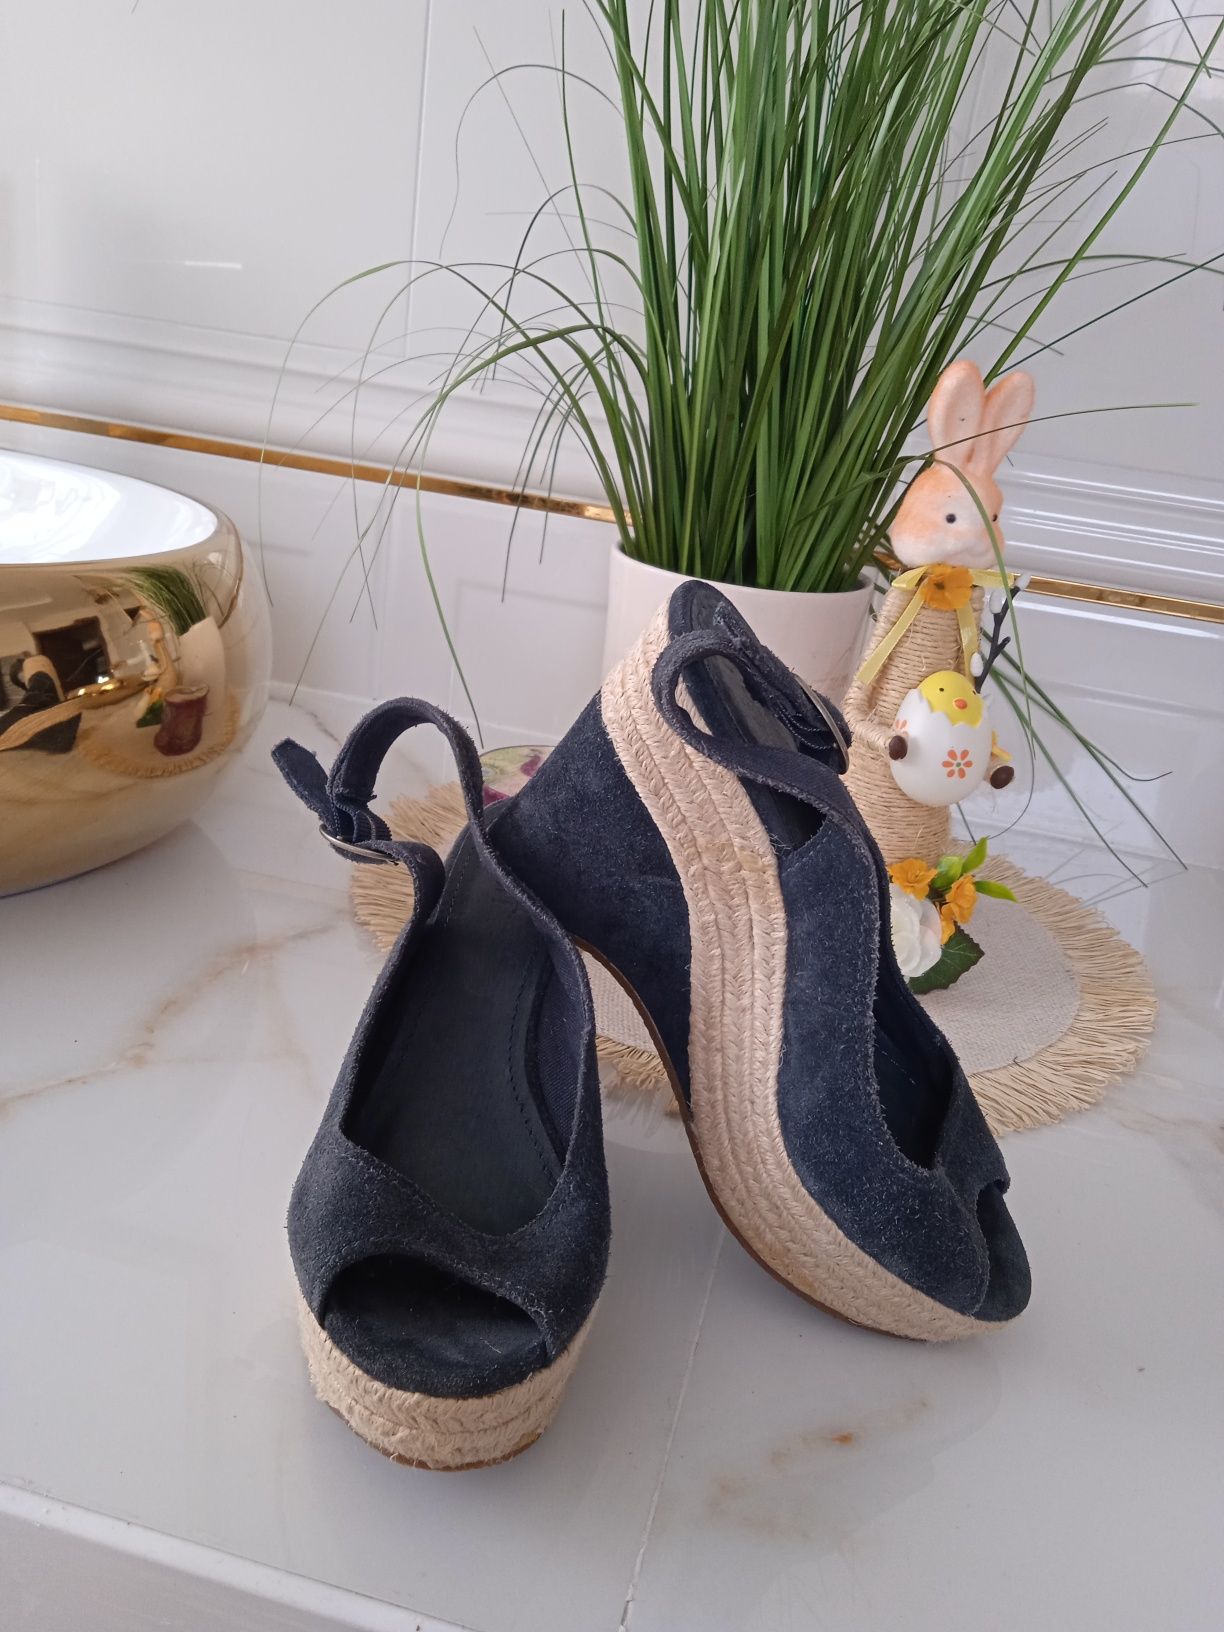 Buty sandały espadryle na koturnie Esprit 36 skórzane